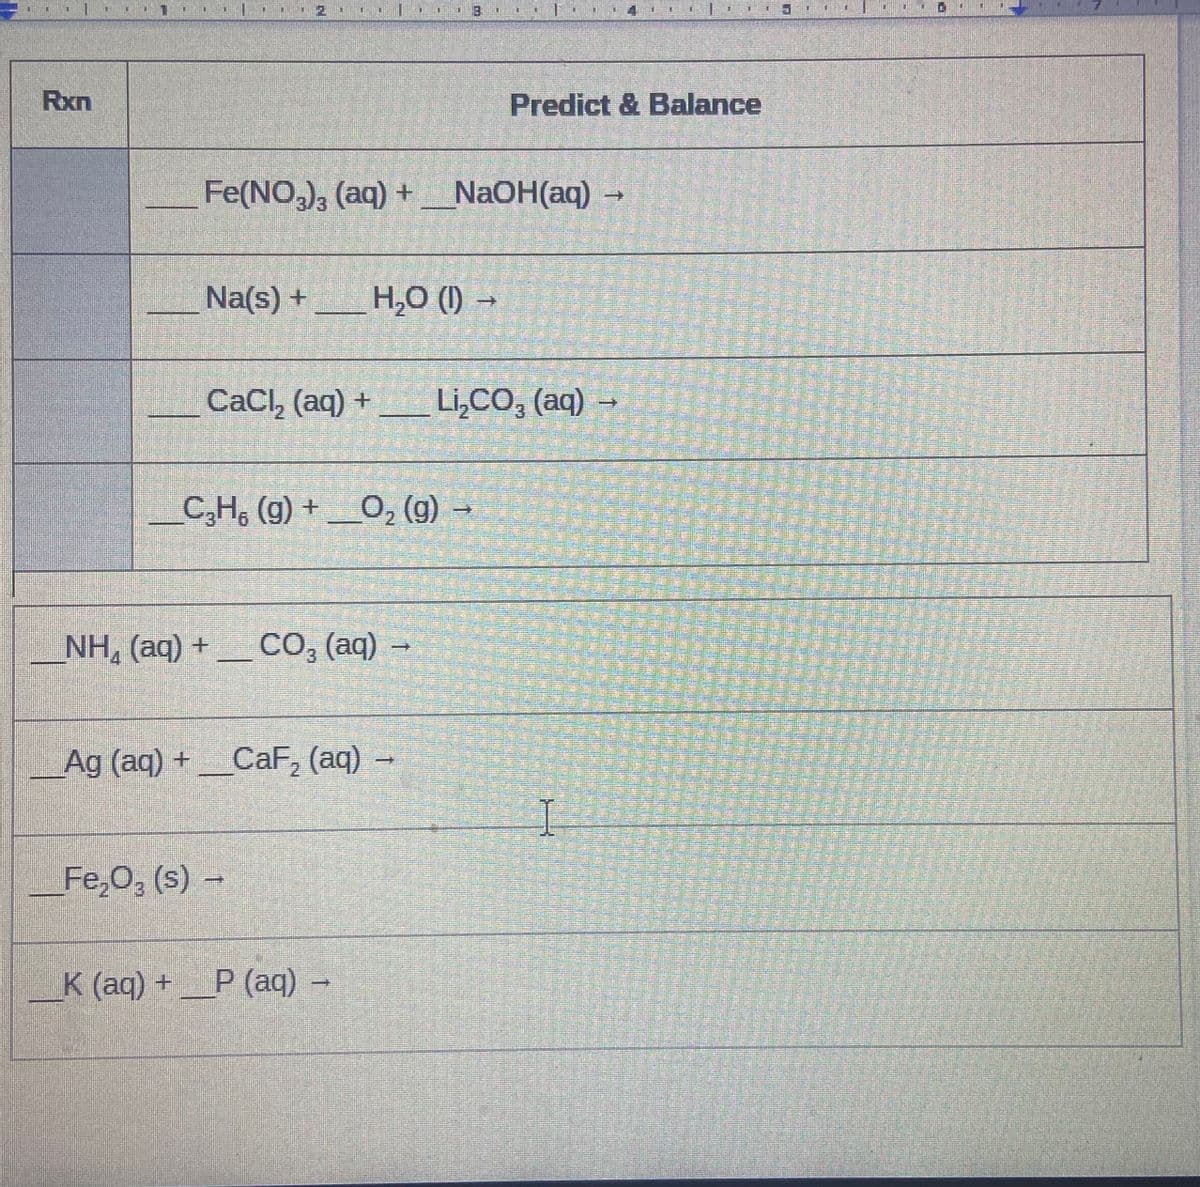 Rxn
Predict & Balance
Fe(NO,), (aq) + NaOH(aq) →
E/3,
Na(s) +
H,0 (1) →
CaCl, (aq) +
Li,CO, (aq) –
3
C,H, (g) +_O, (g) –
NH, (aq) +
– CO, (aq) -
Ag (aq) +_CaF, (aq) -
2
Fe,0, (s) -
K (aq) +P (aq)
